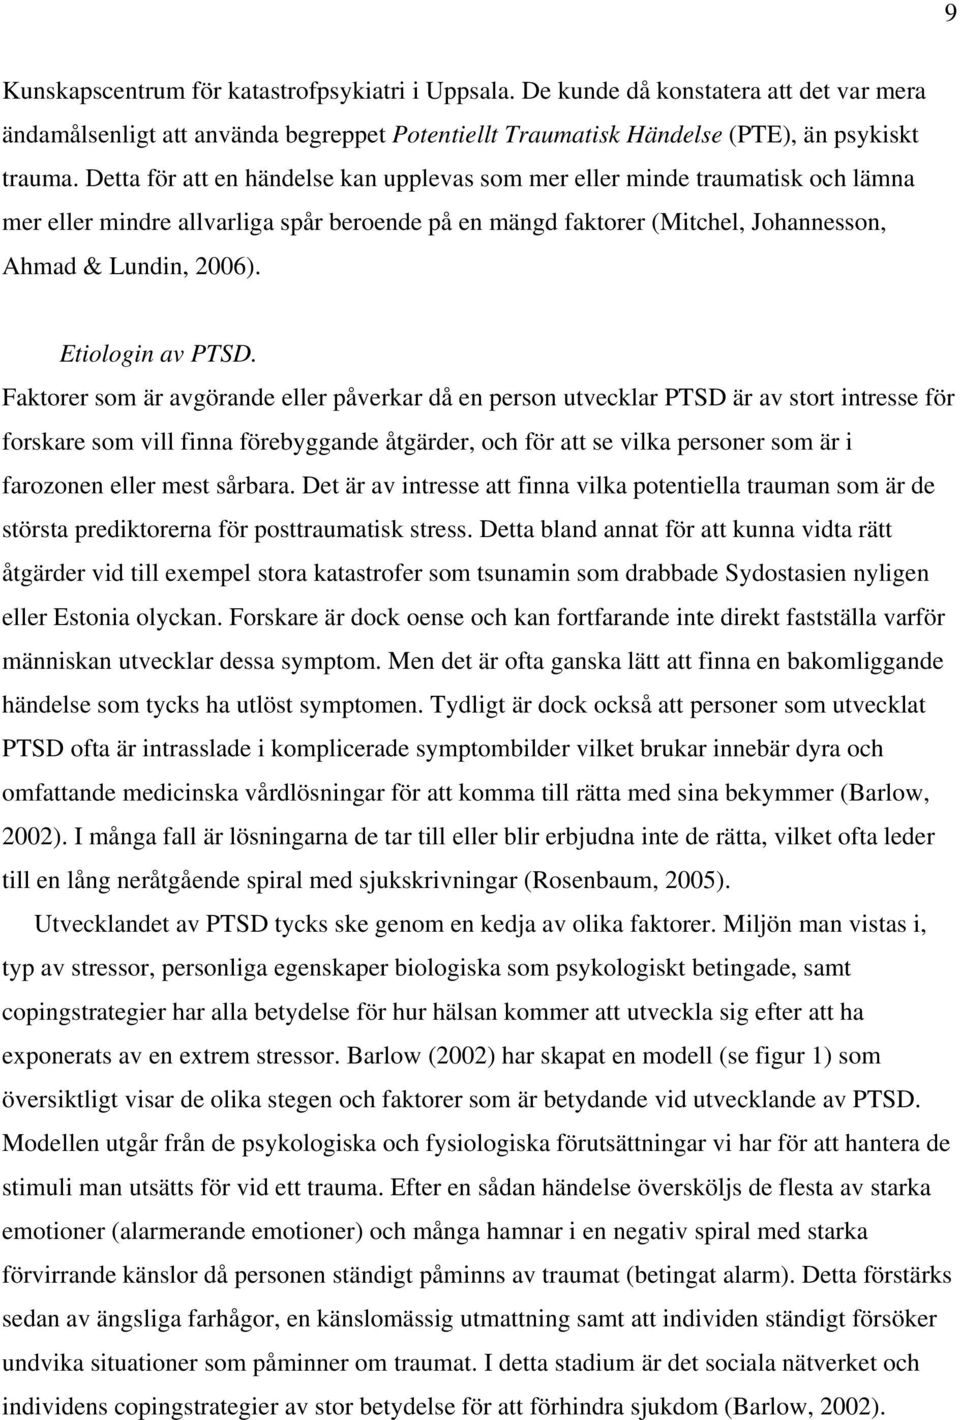 Etiologin av PTSD.